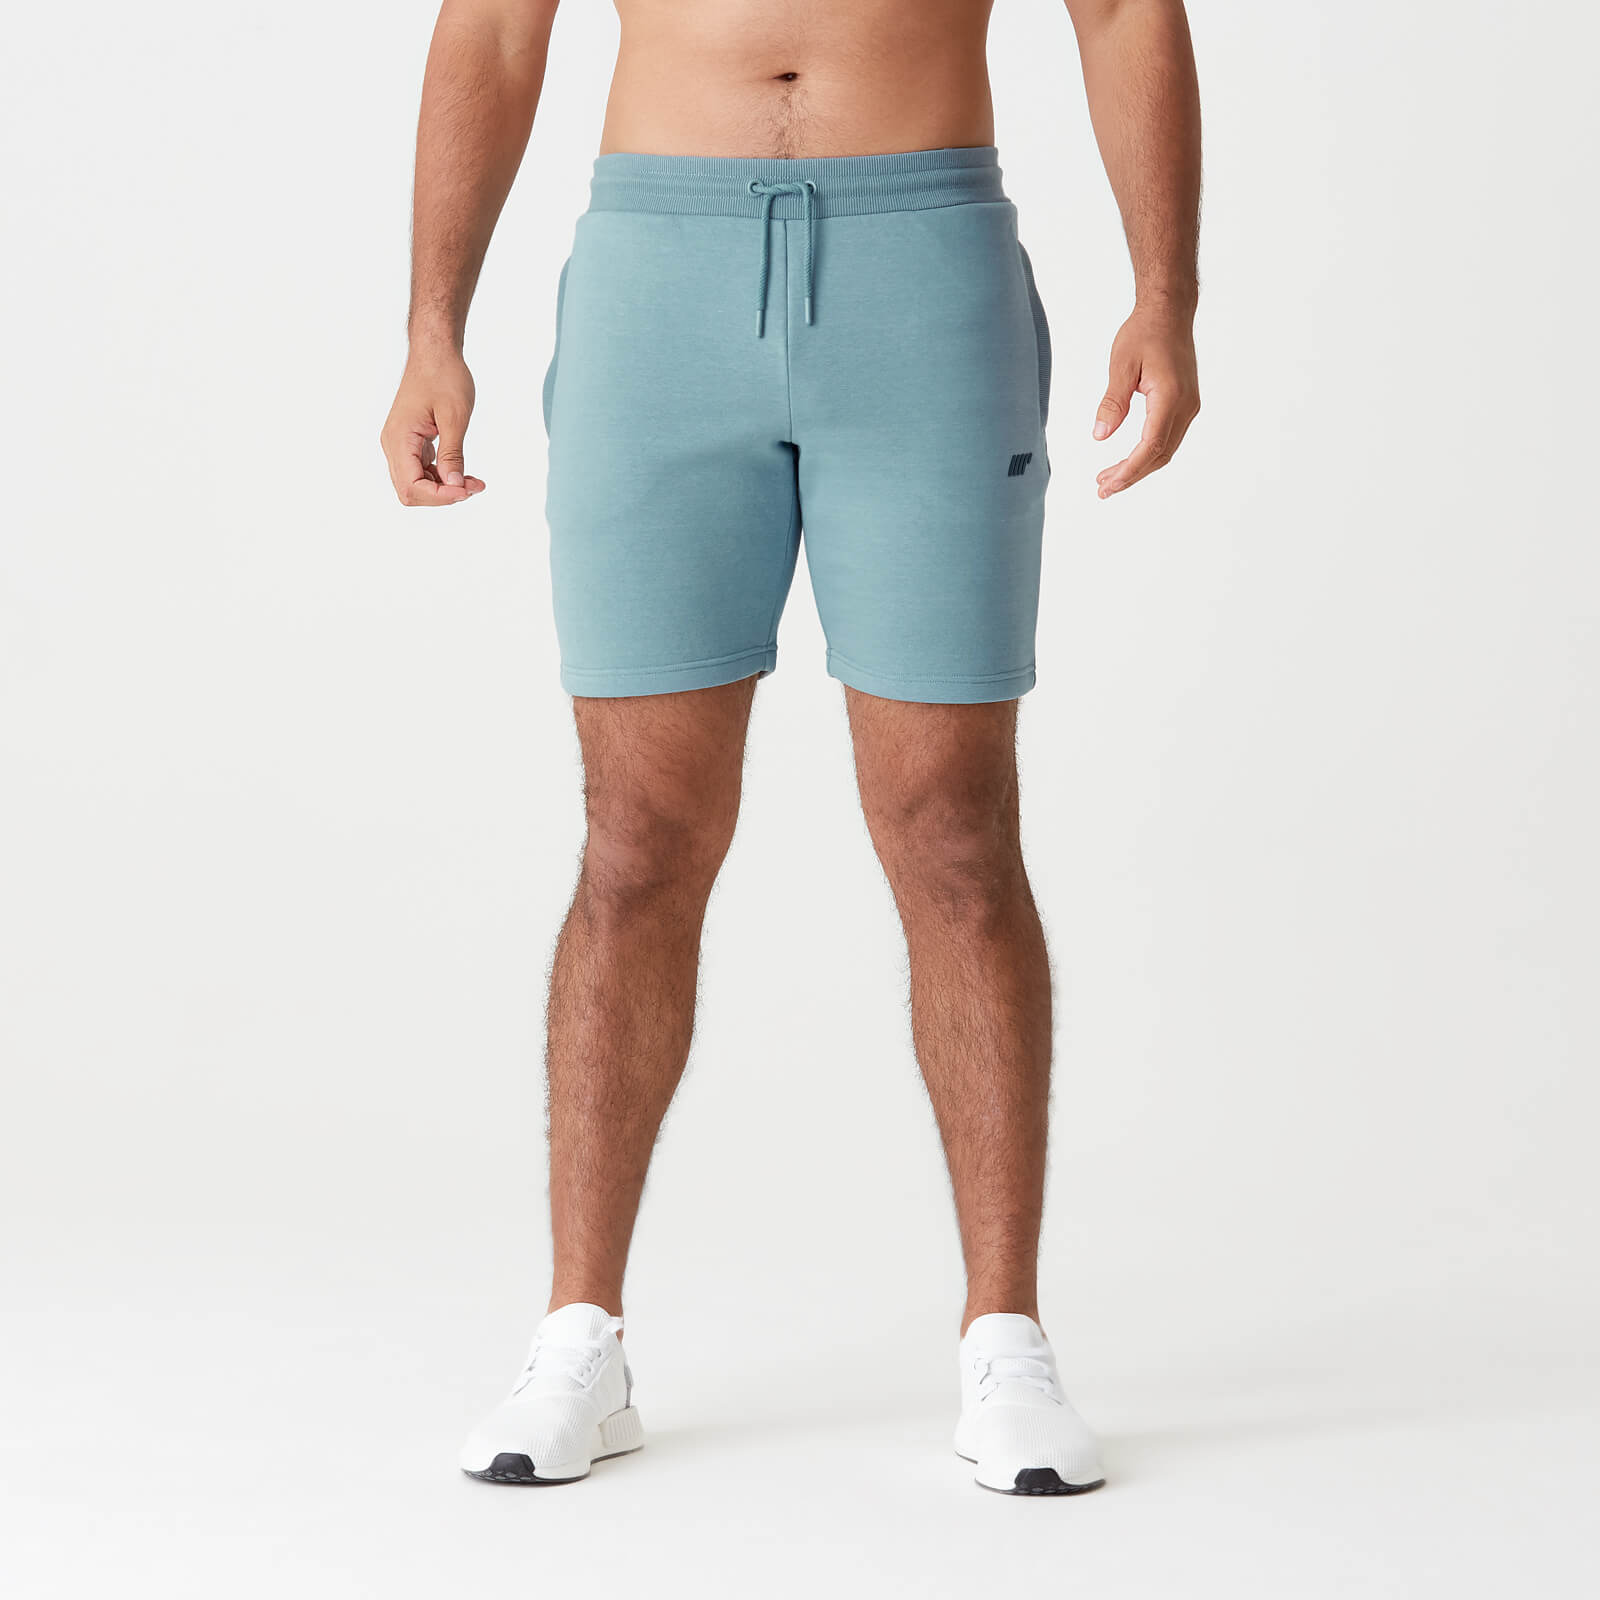 Tru-Fit 修身系列 2.0 男士休閒運動短褲 - 灰藍 - S